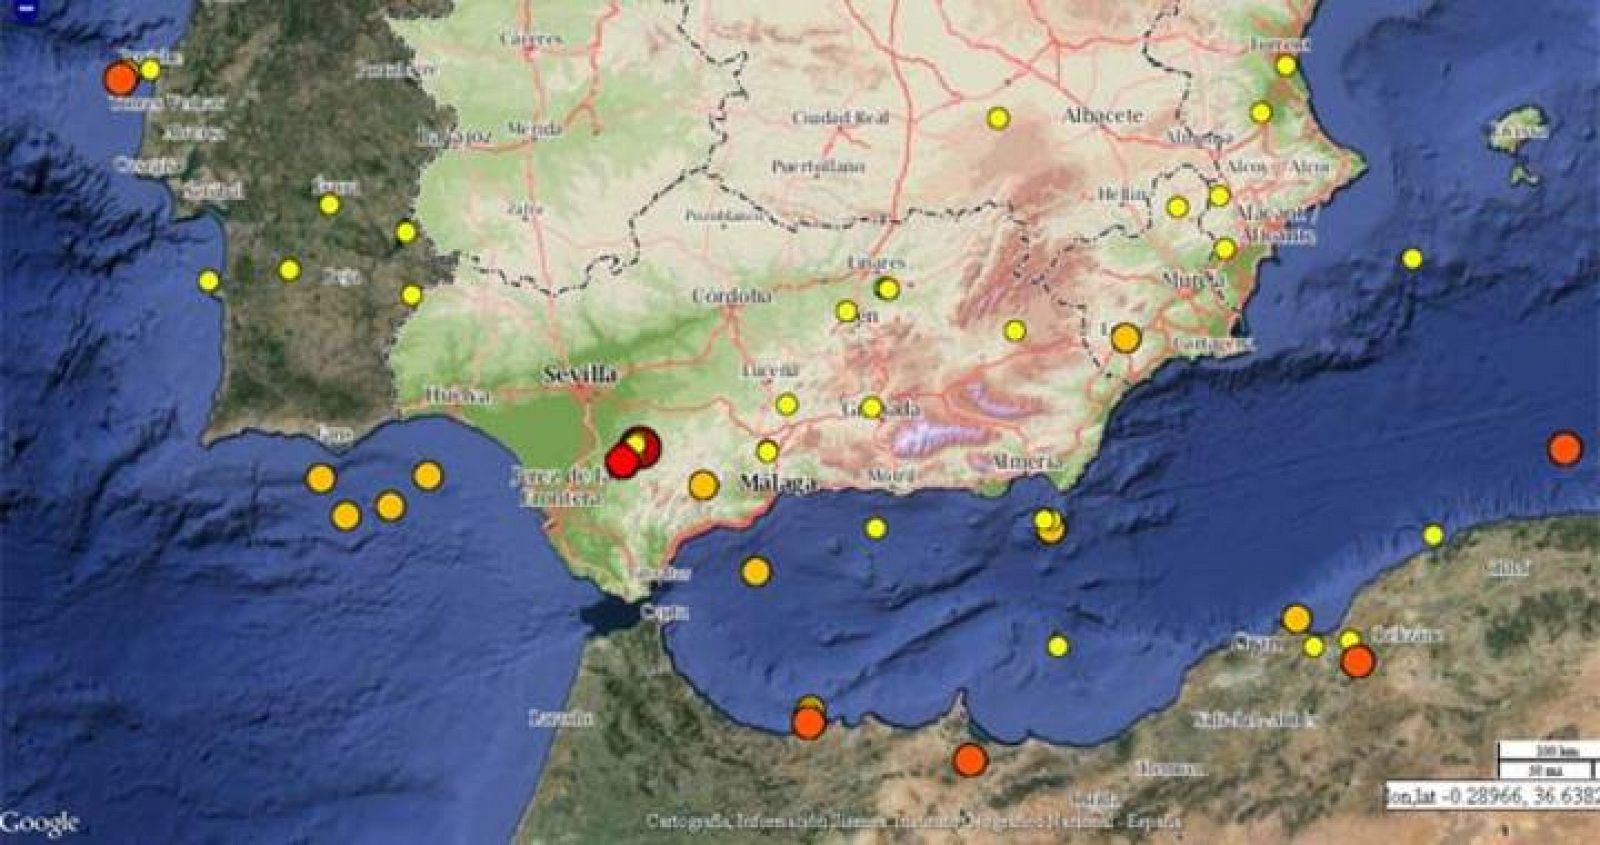 Detalle del mapa de visualización de terremotos del Instituto Geográfico Nacional, con el seísmo registrado en Montellano (Sevilla).